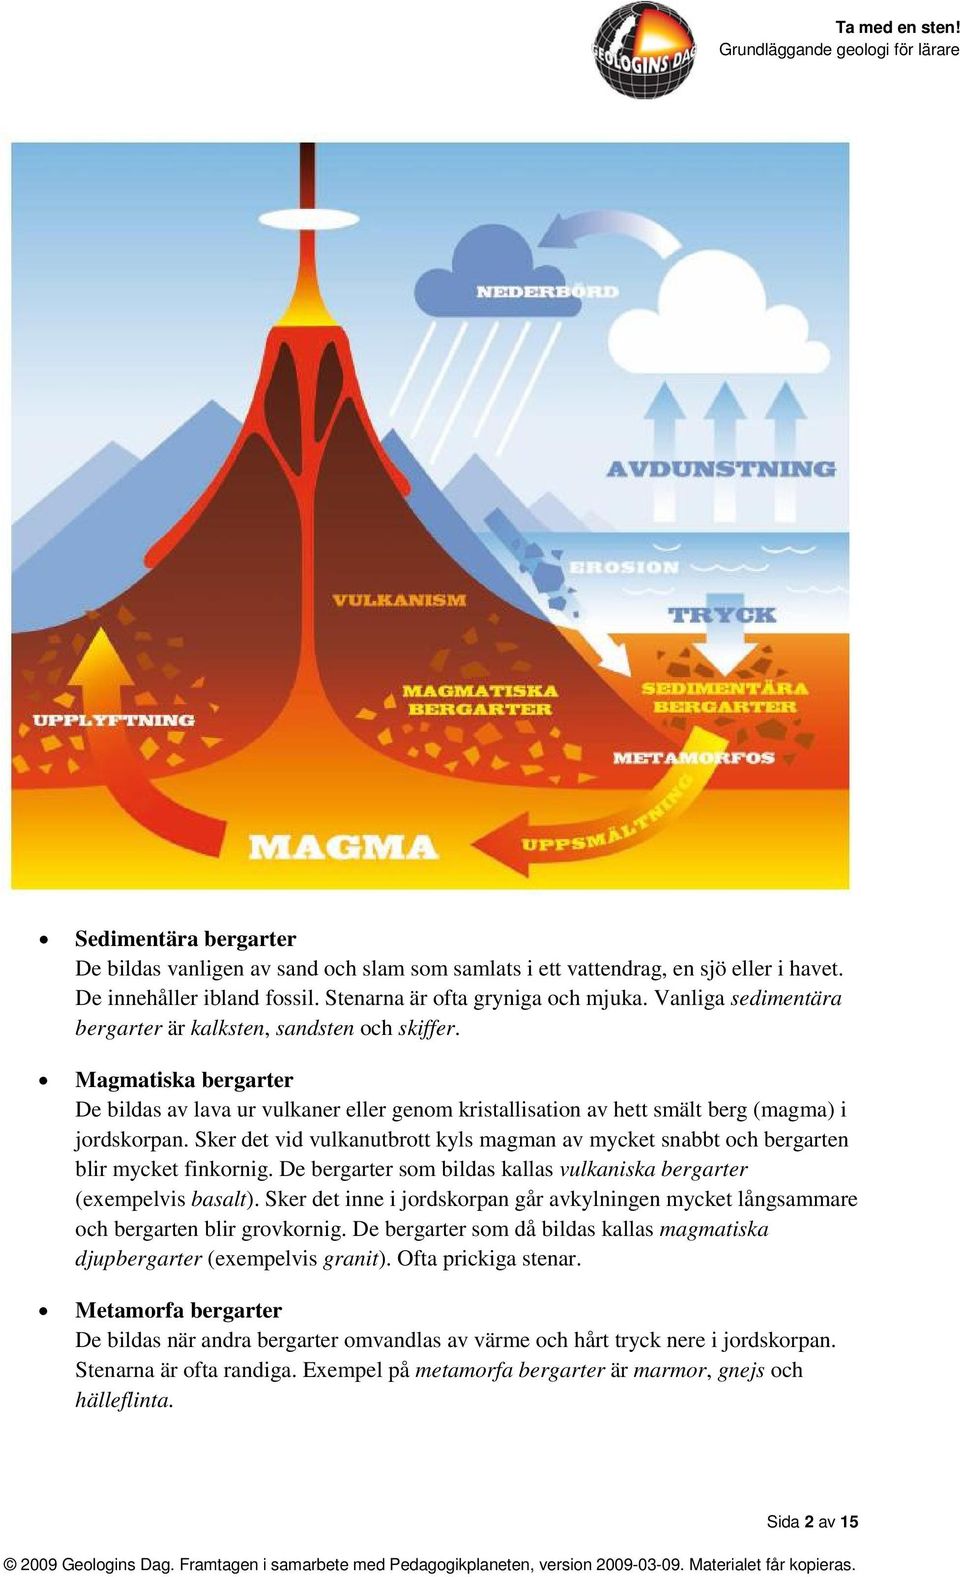 Sker det vid vulkanutbrott kyls magman av mycket snabbt och bergarten blir mycket finkornig. De bergarter som bildas kallas vulkaniska bergarter (exempelvis basalt).